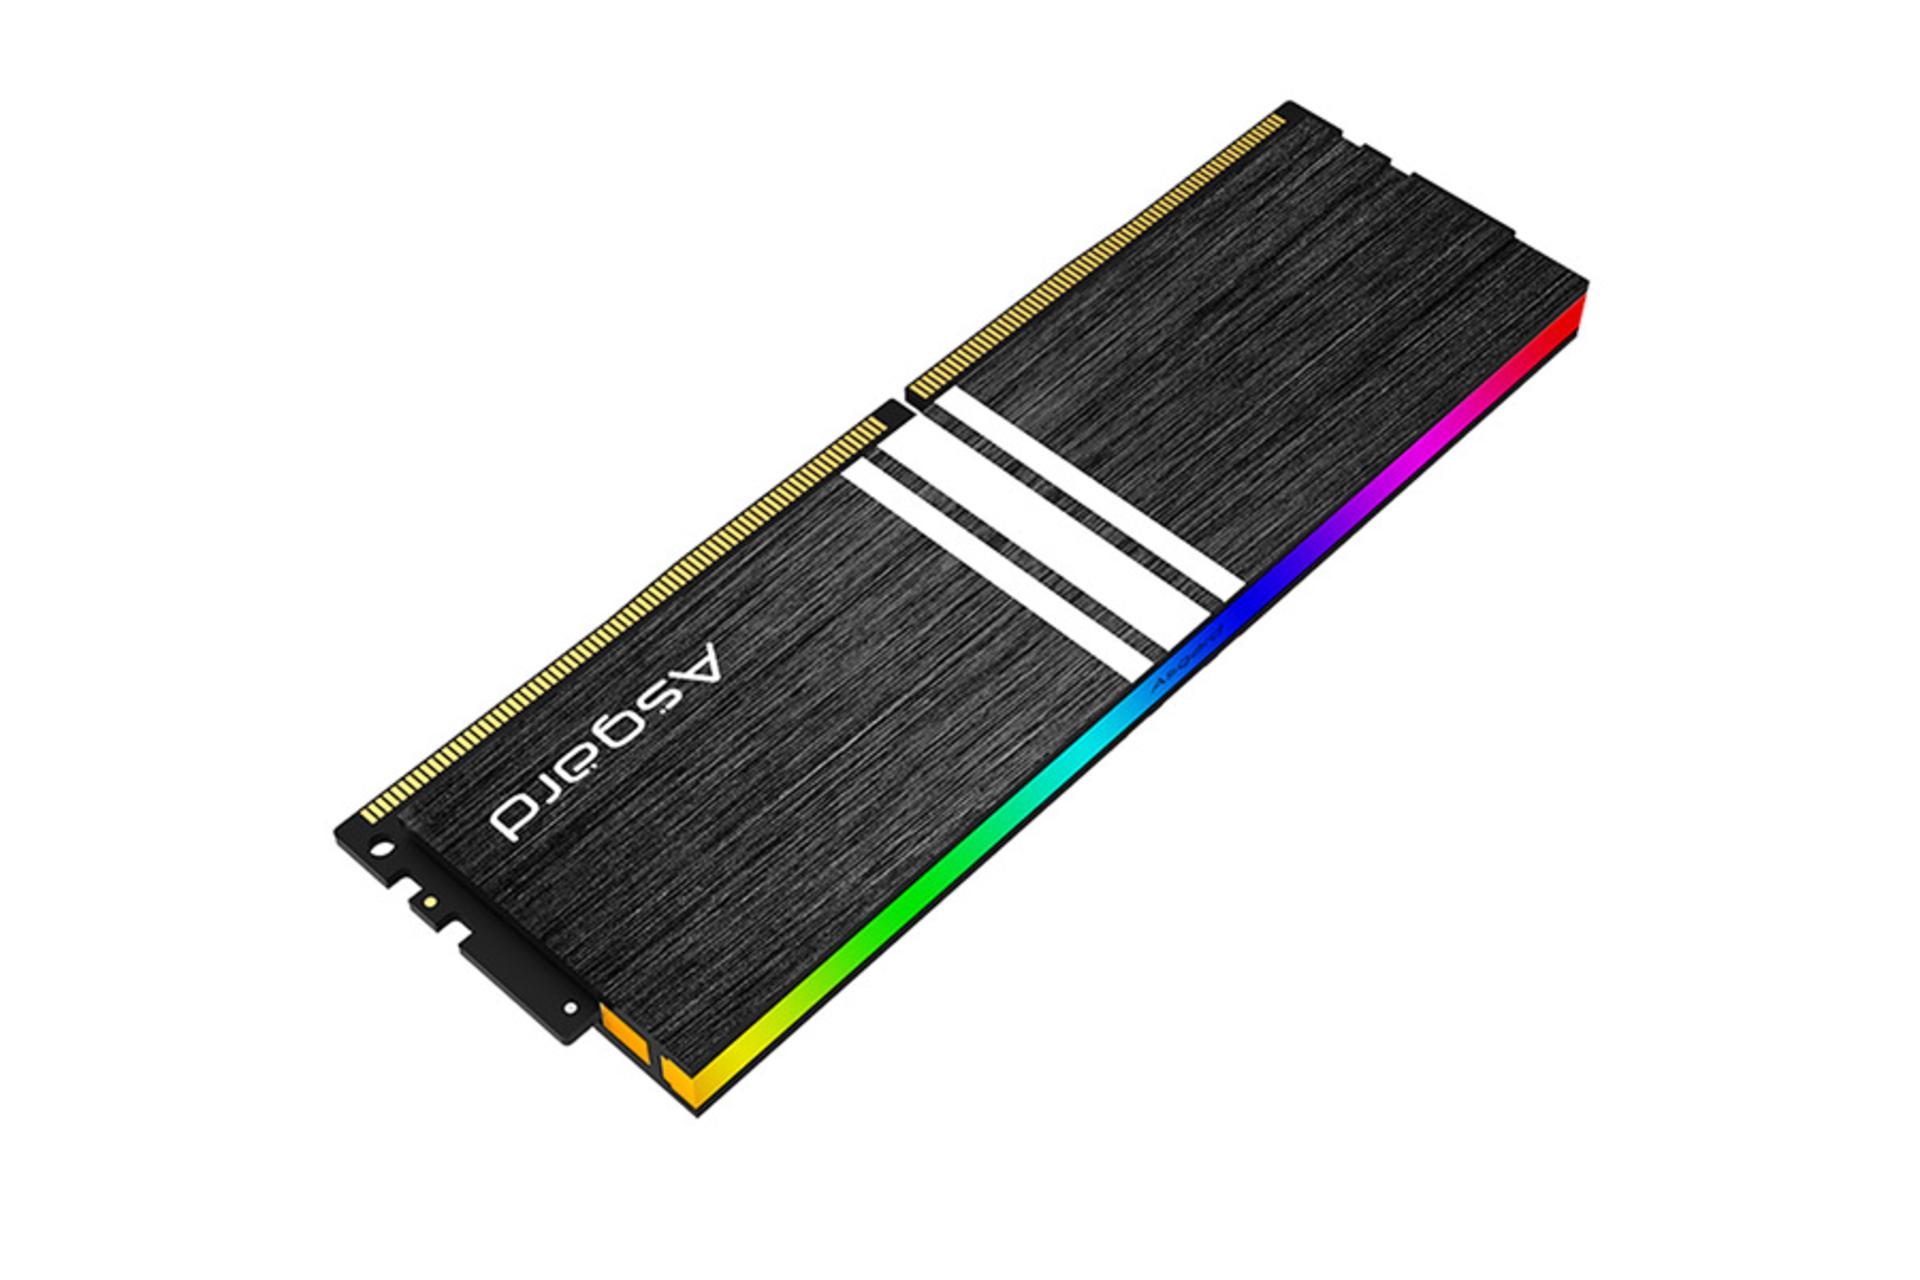 رم ازگارد V1 ARGB ظرفیت 32 گیگابایت (2x16) از نوع DDR4-3600 نمای جانبی